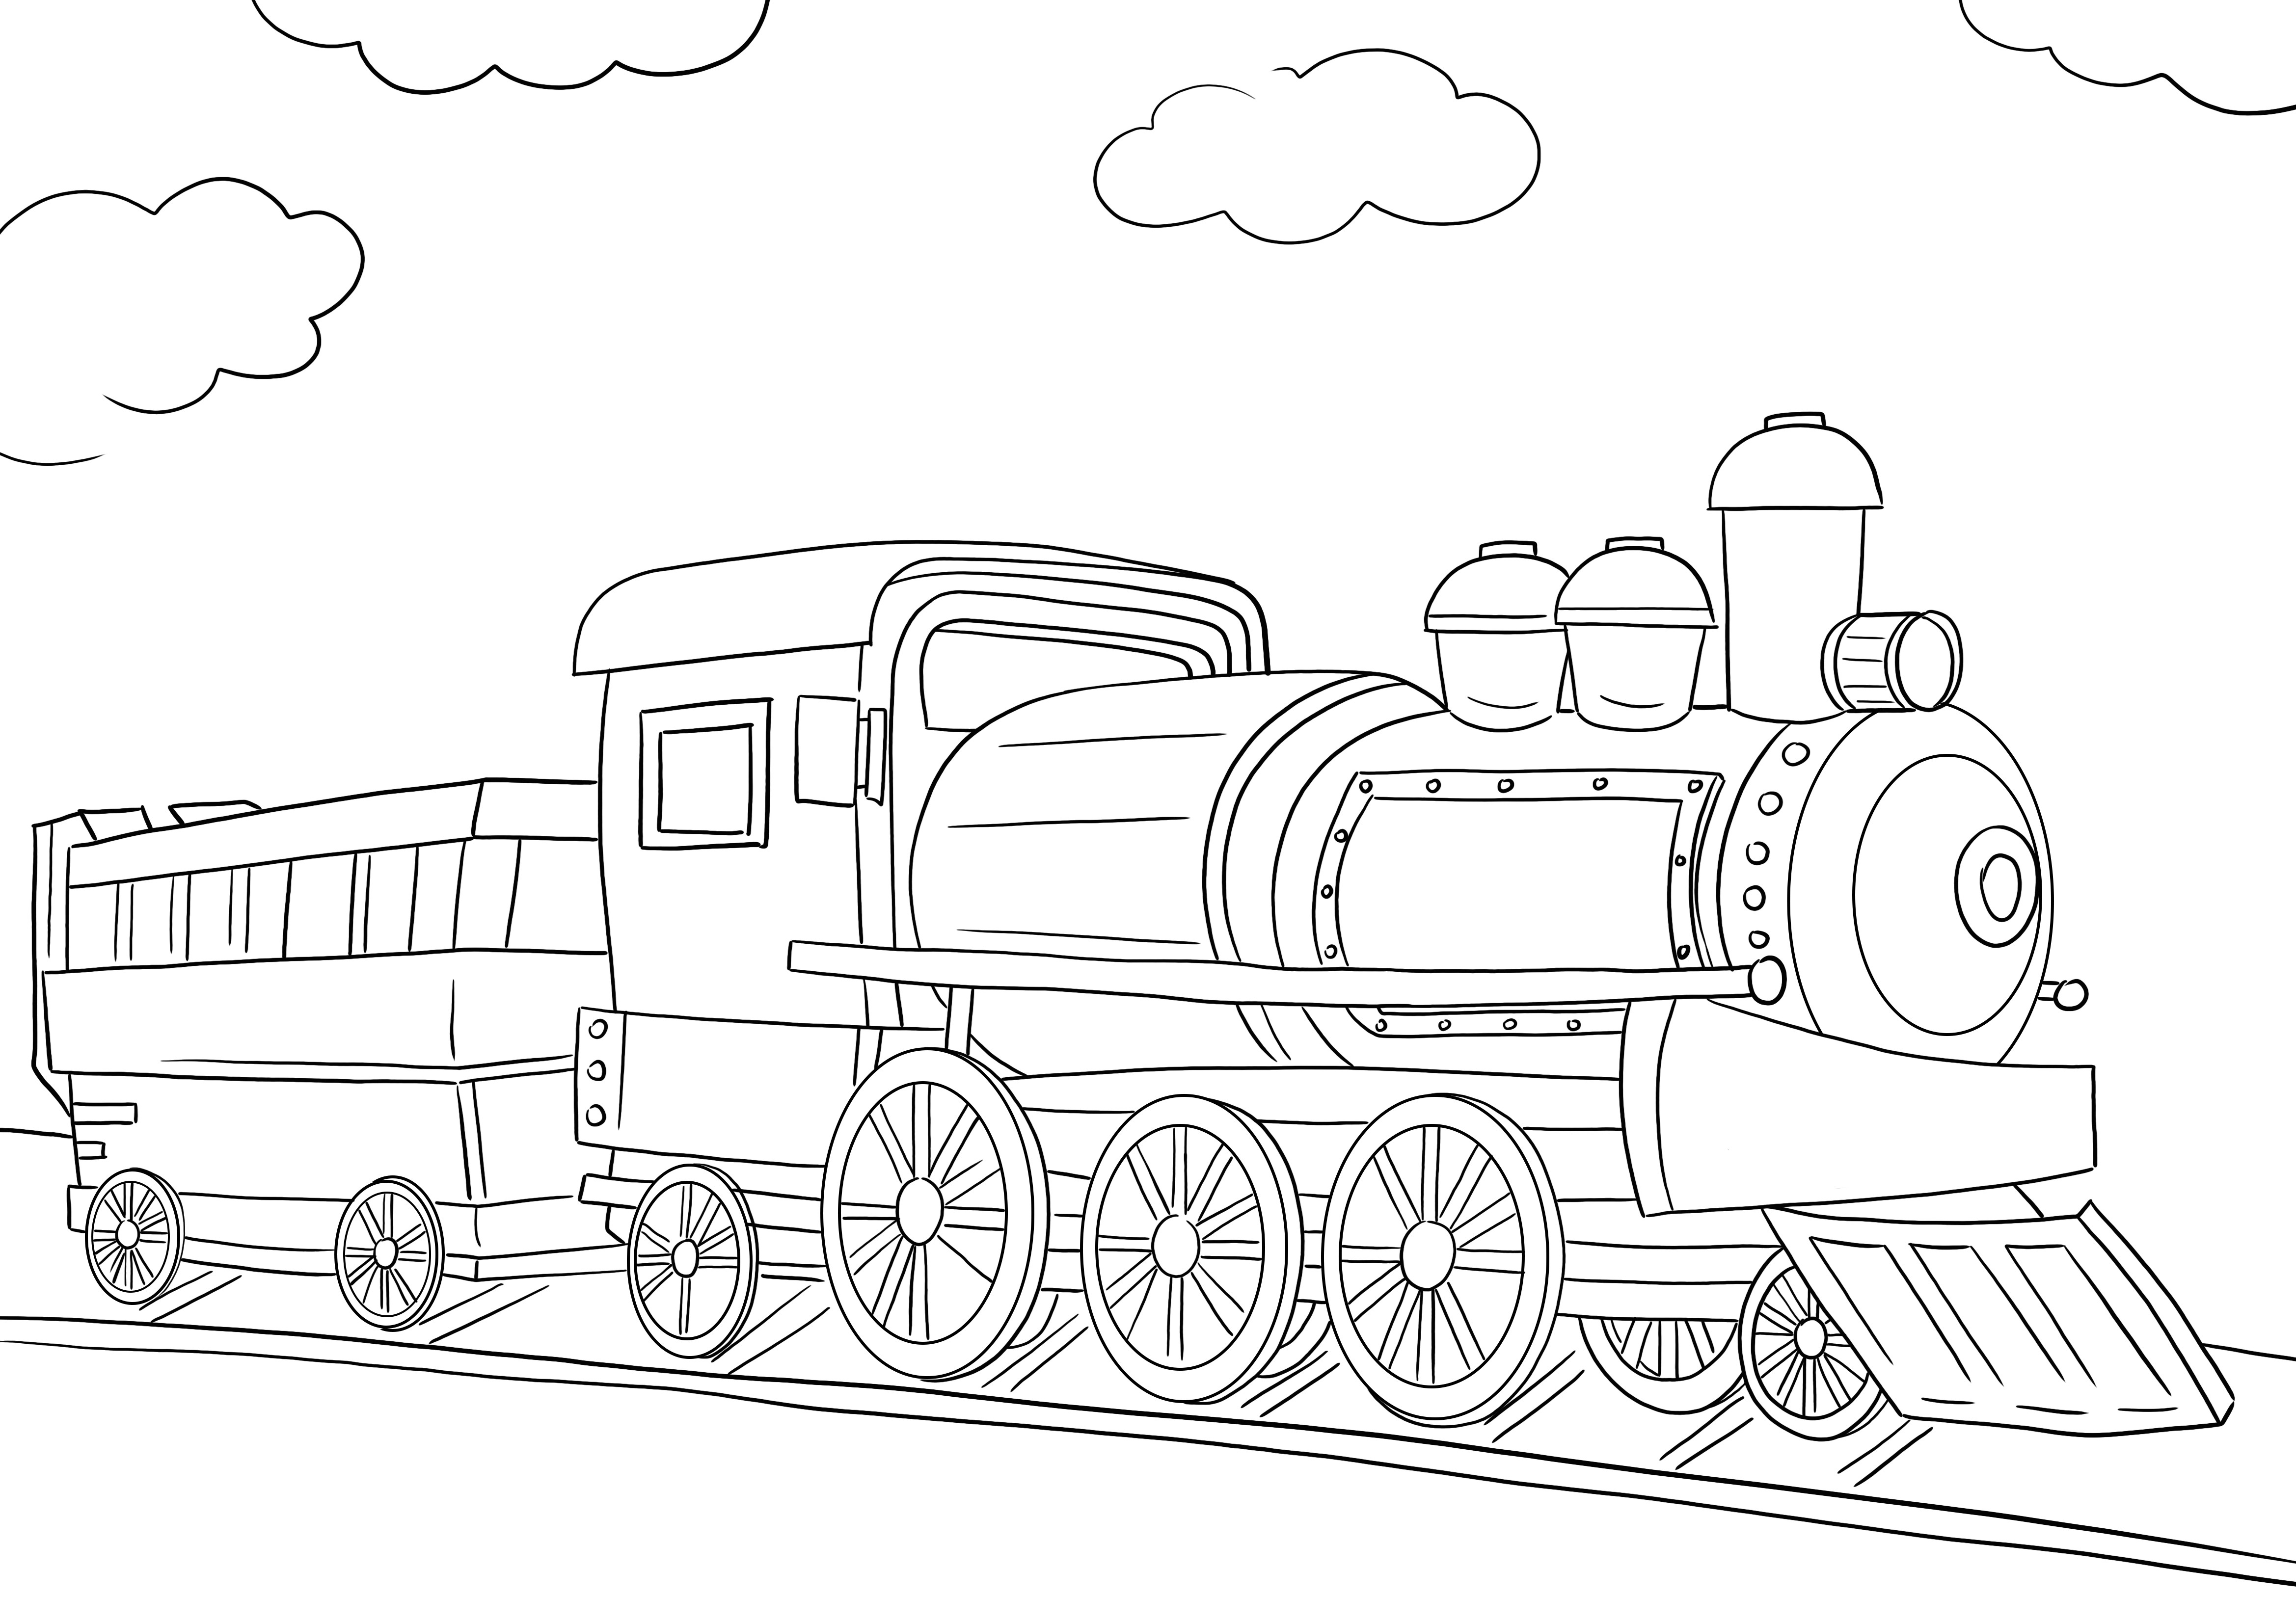 Een gratis te gebruiken kleurafbeelding van de locomotief van een trein om af te drukken of te downloaden kleurplaat